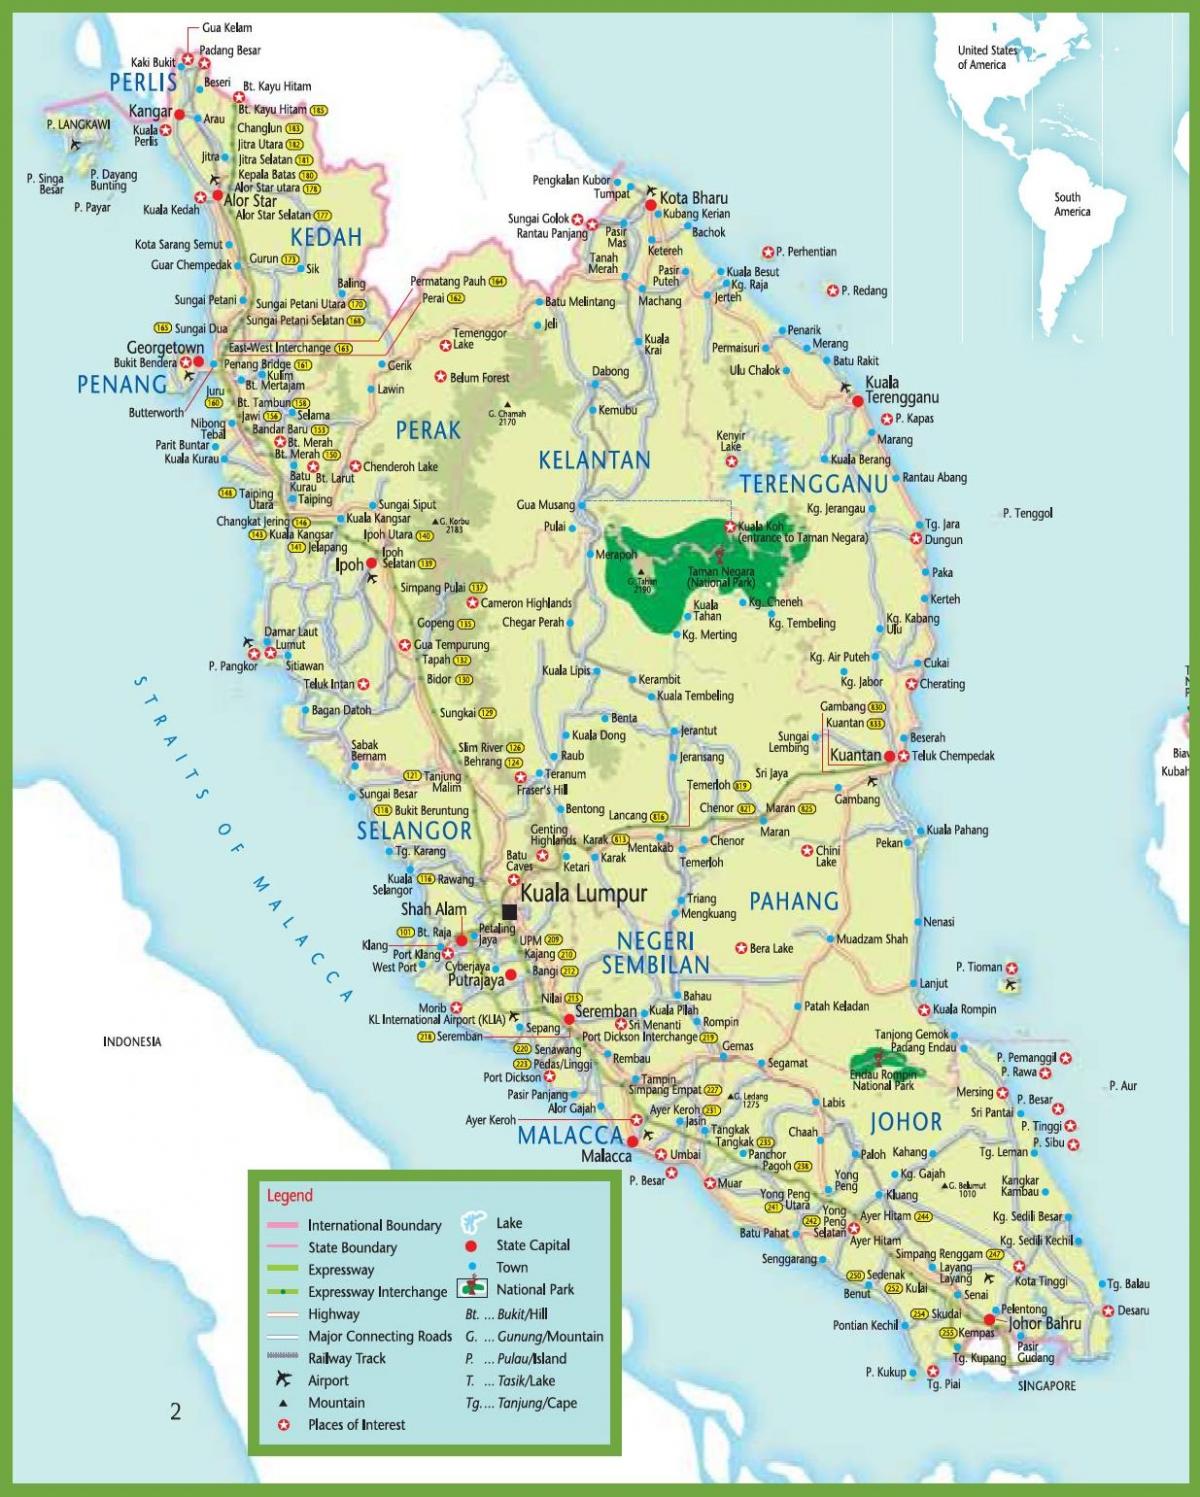 mrt χάρτη στη μαλαισία